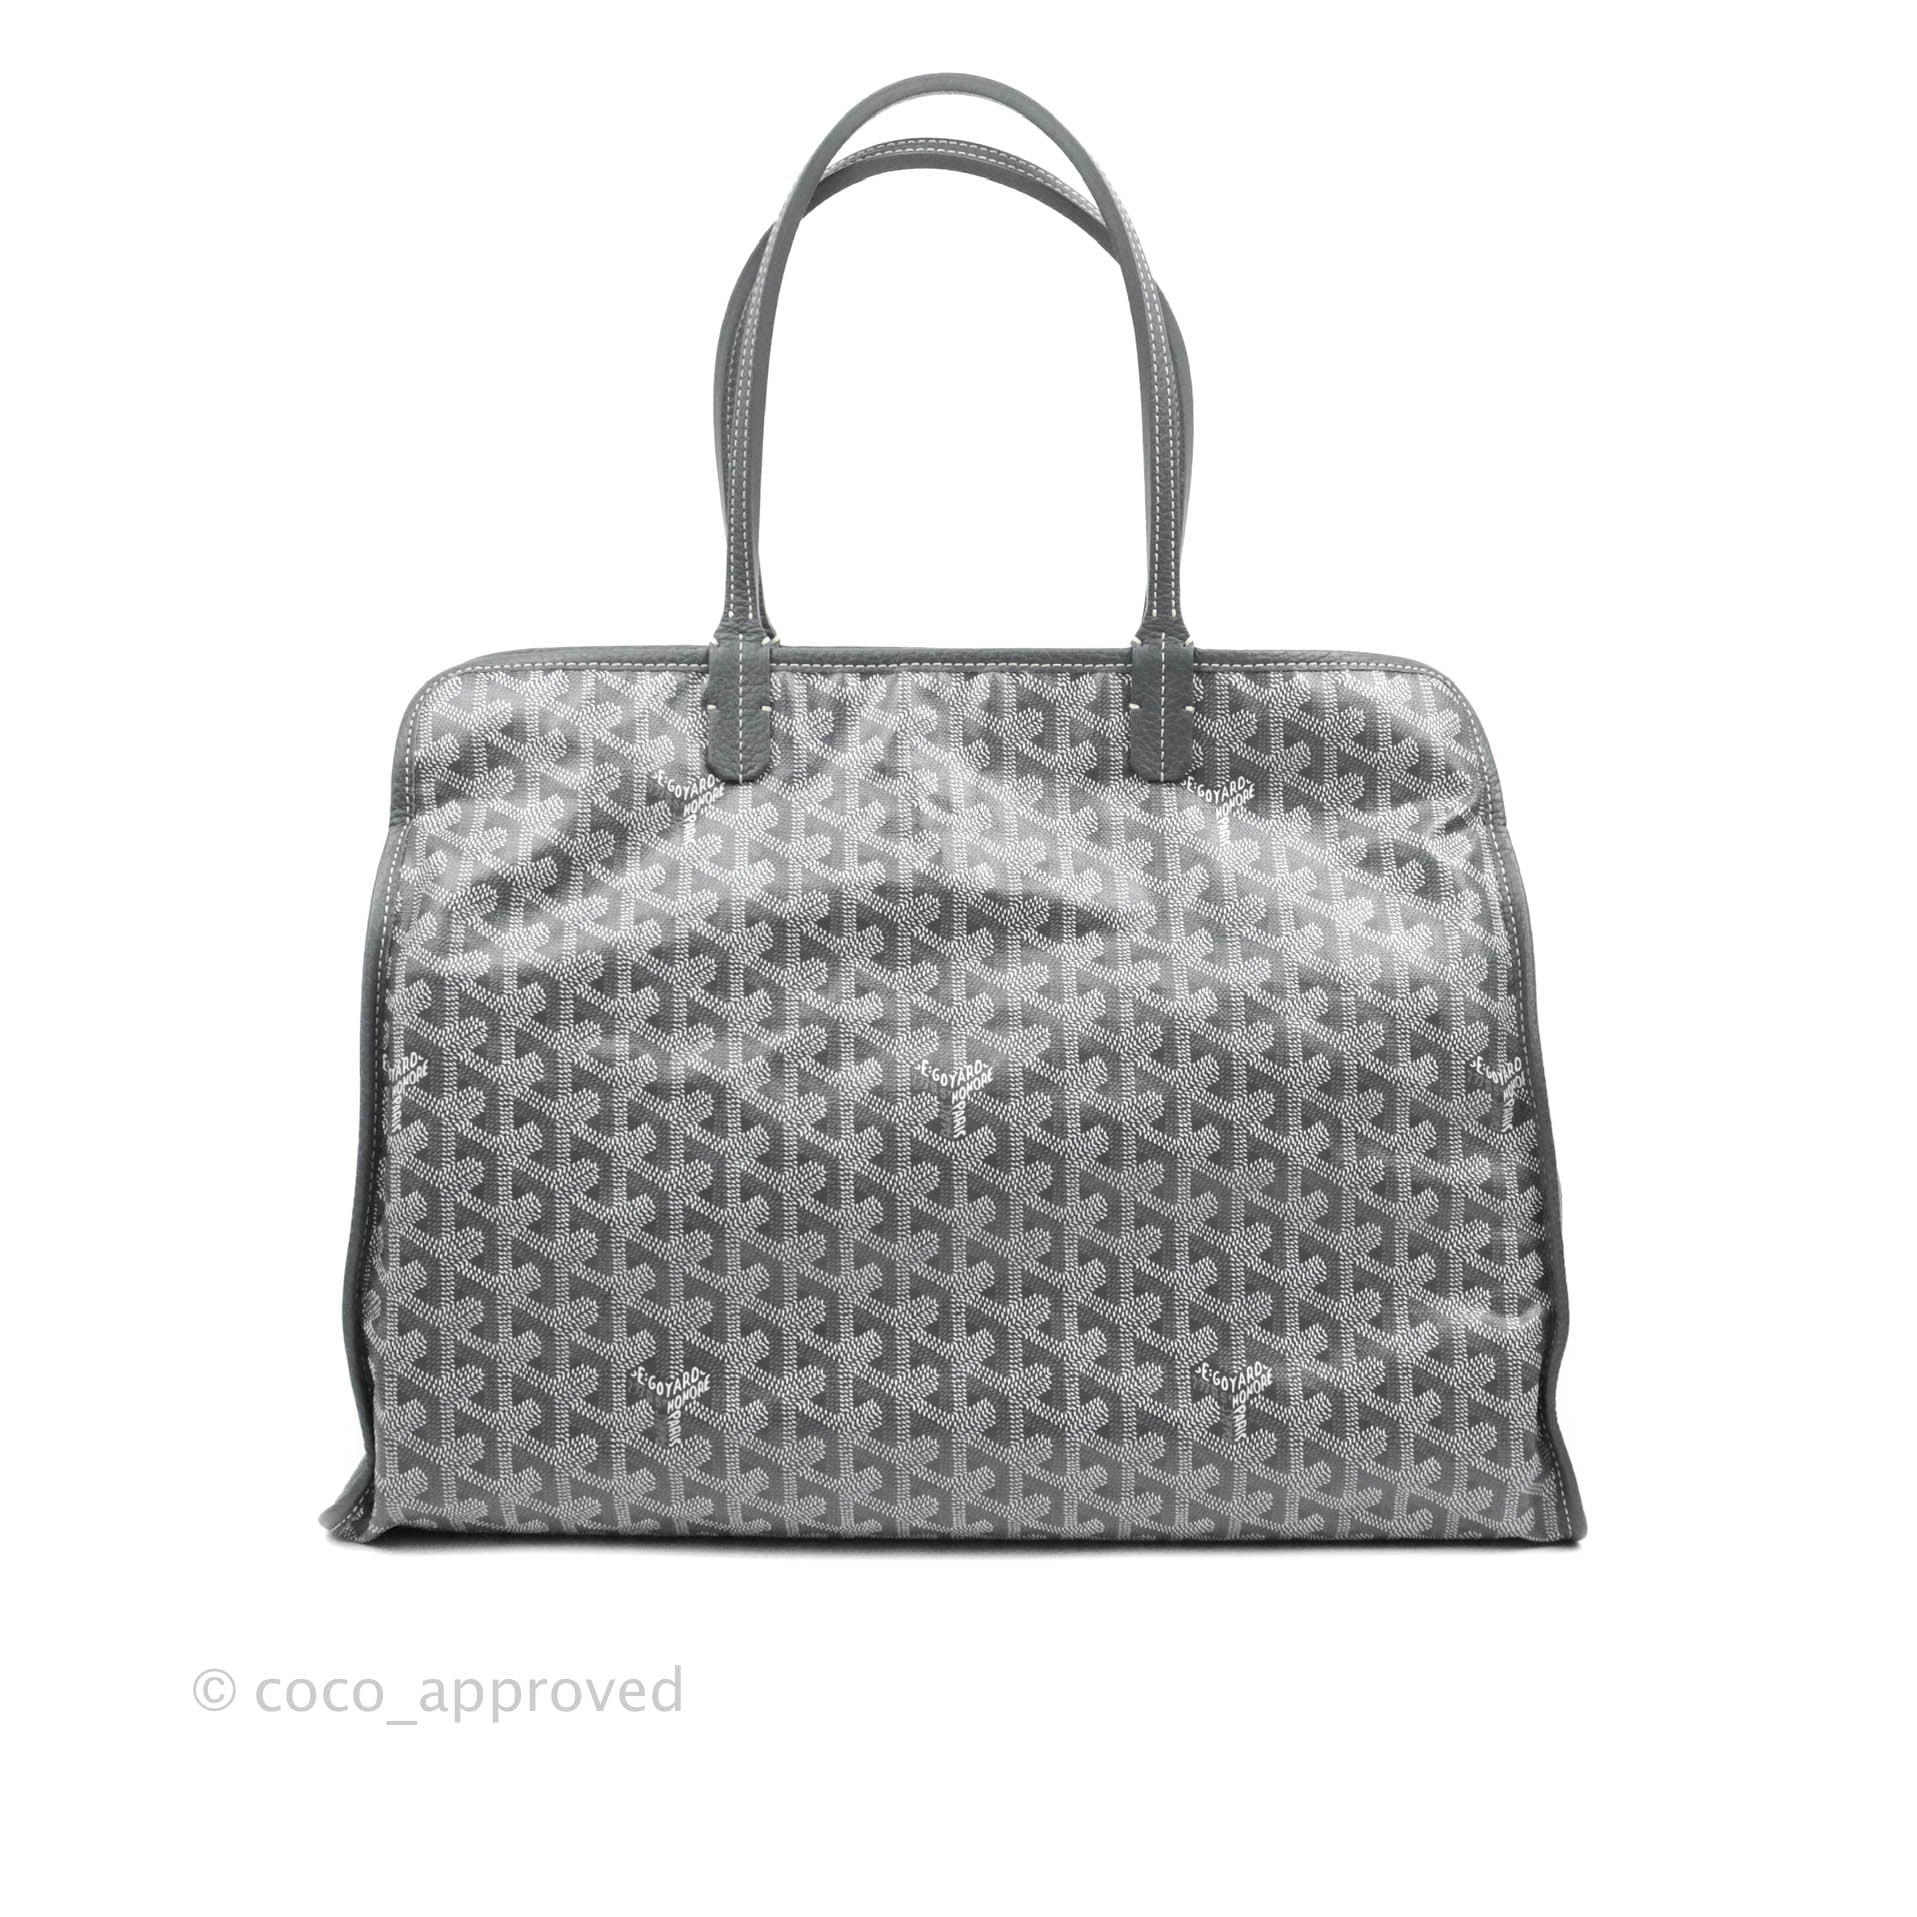 Goyard Goyardine Sac Hardy PM w/ Pouch - Grey Totes, Handbags - GOY37633